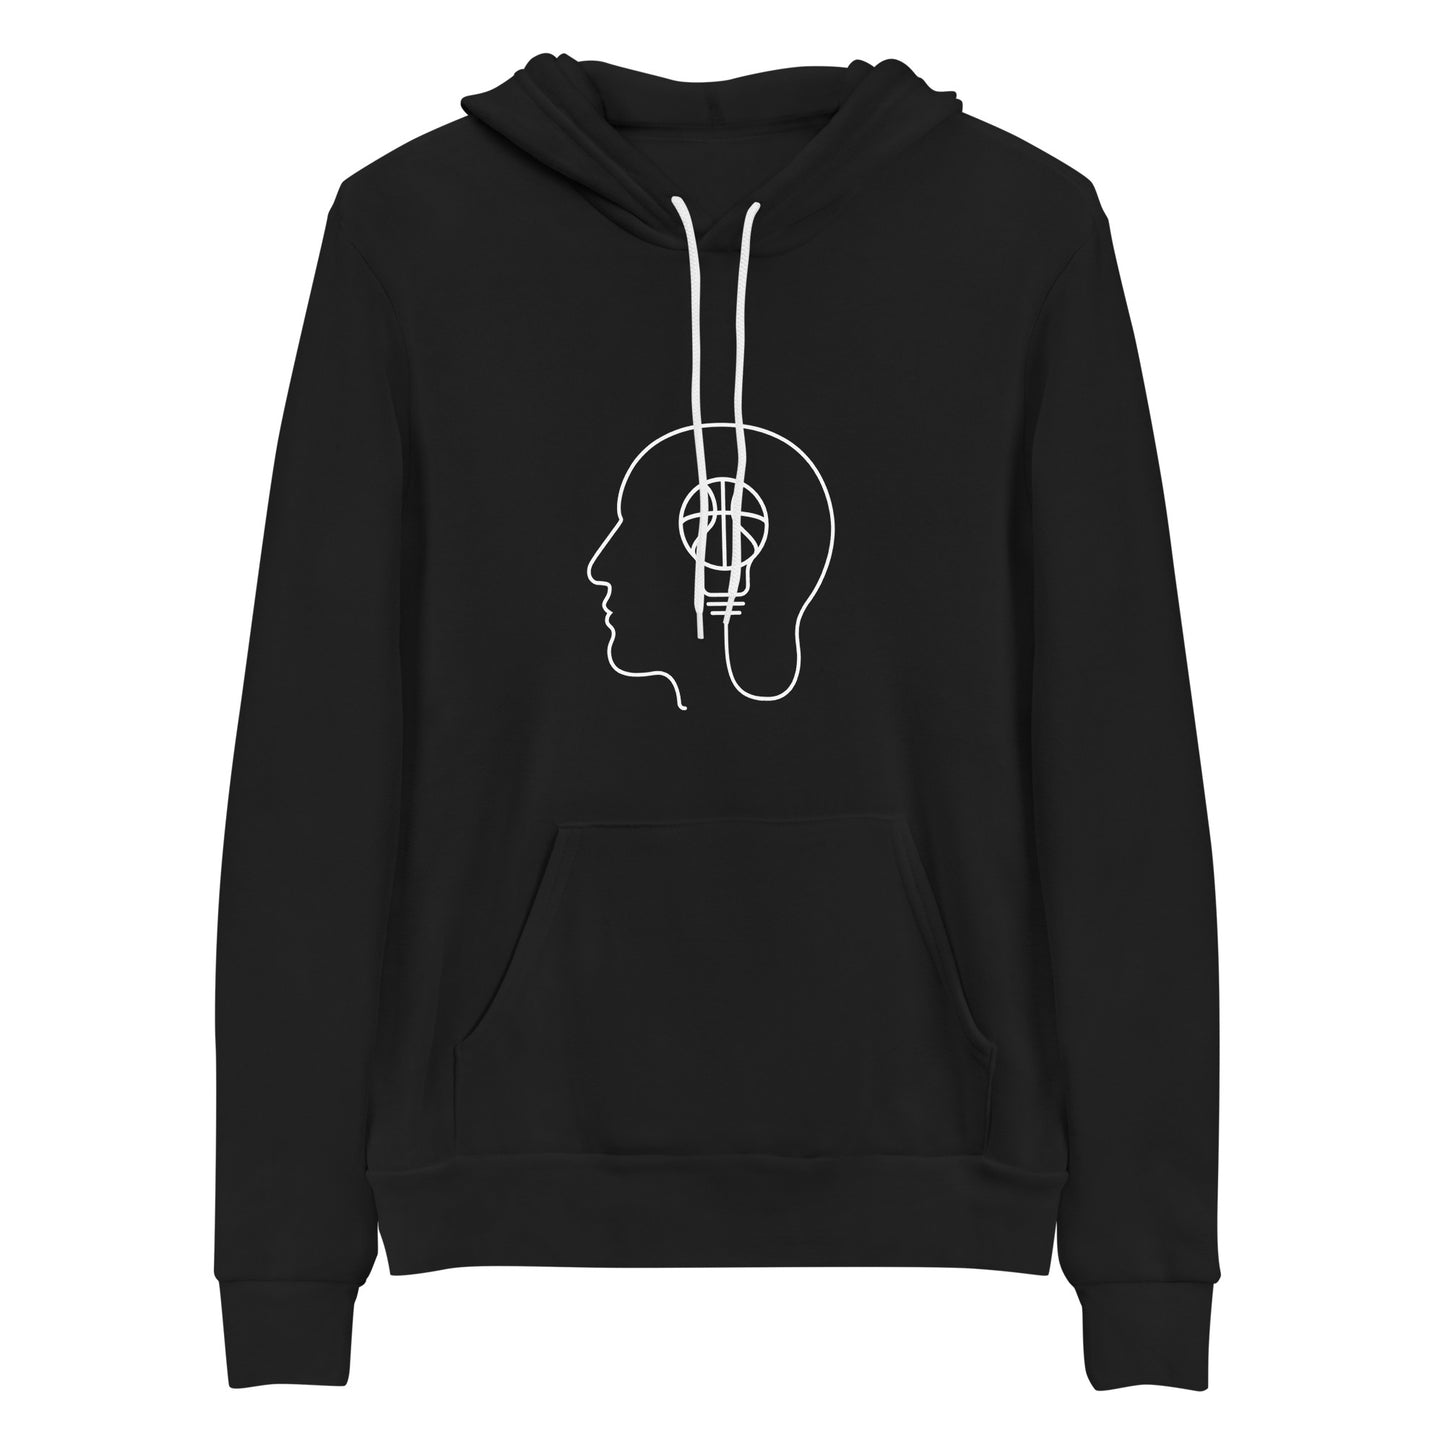 TB hoodie